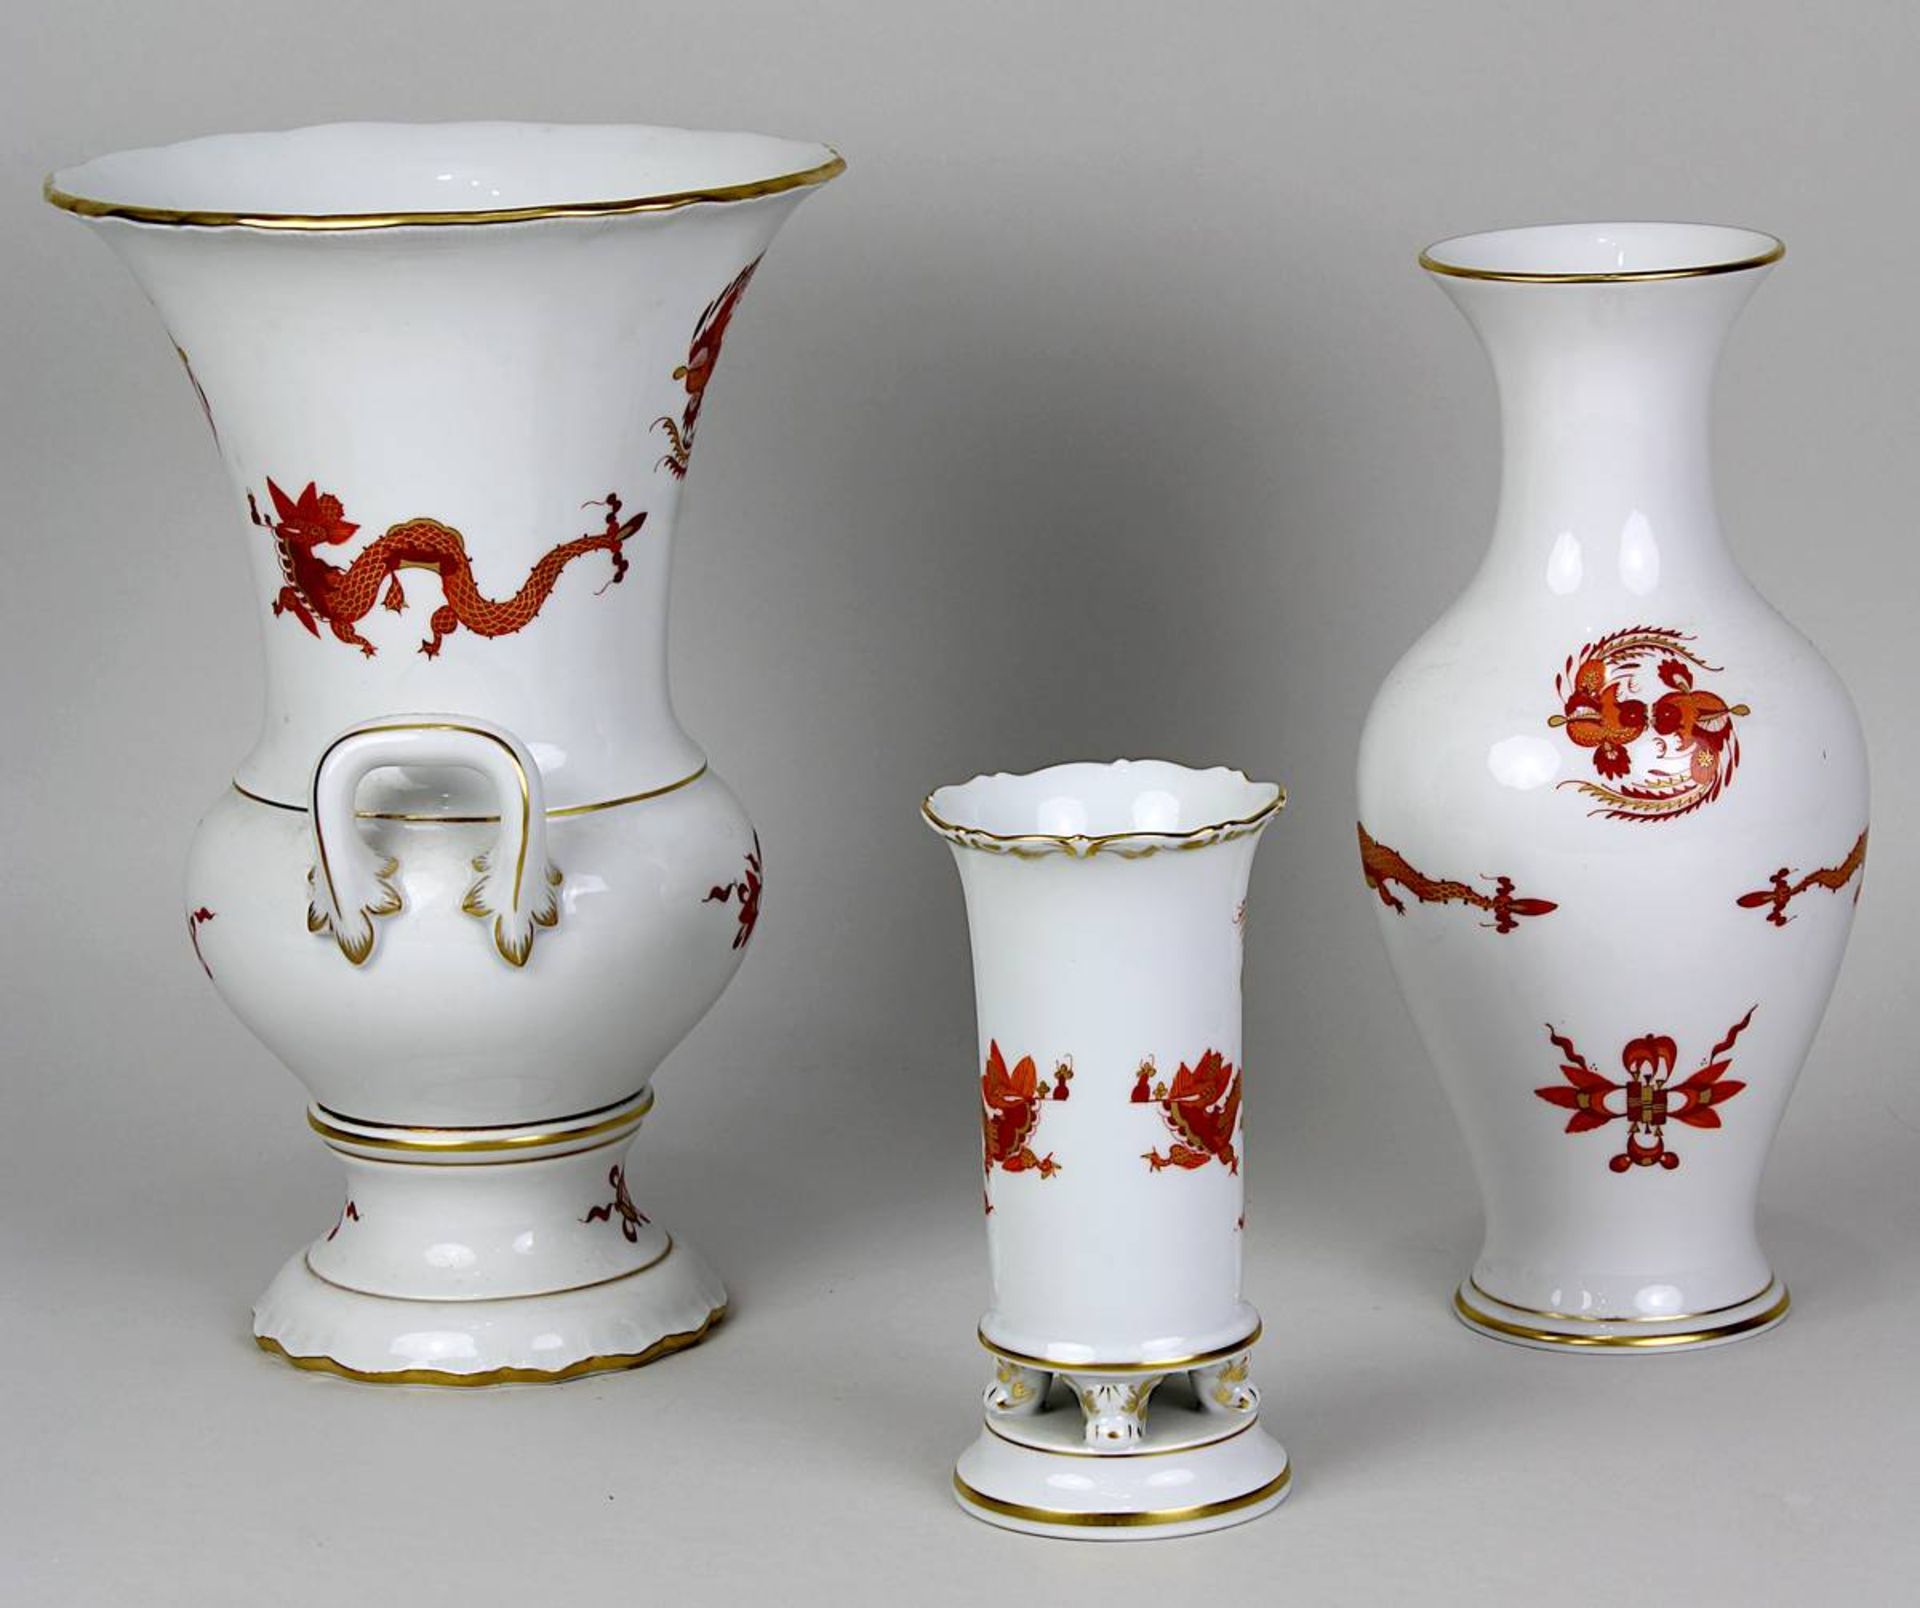 Drei Vasen, Meissen 2. H. 20. Jh., Dekor roter Drache mit Goldrändern, purpur u. gold staffiert: - Image 4 of 5